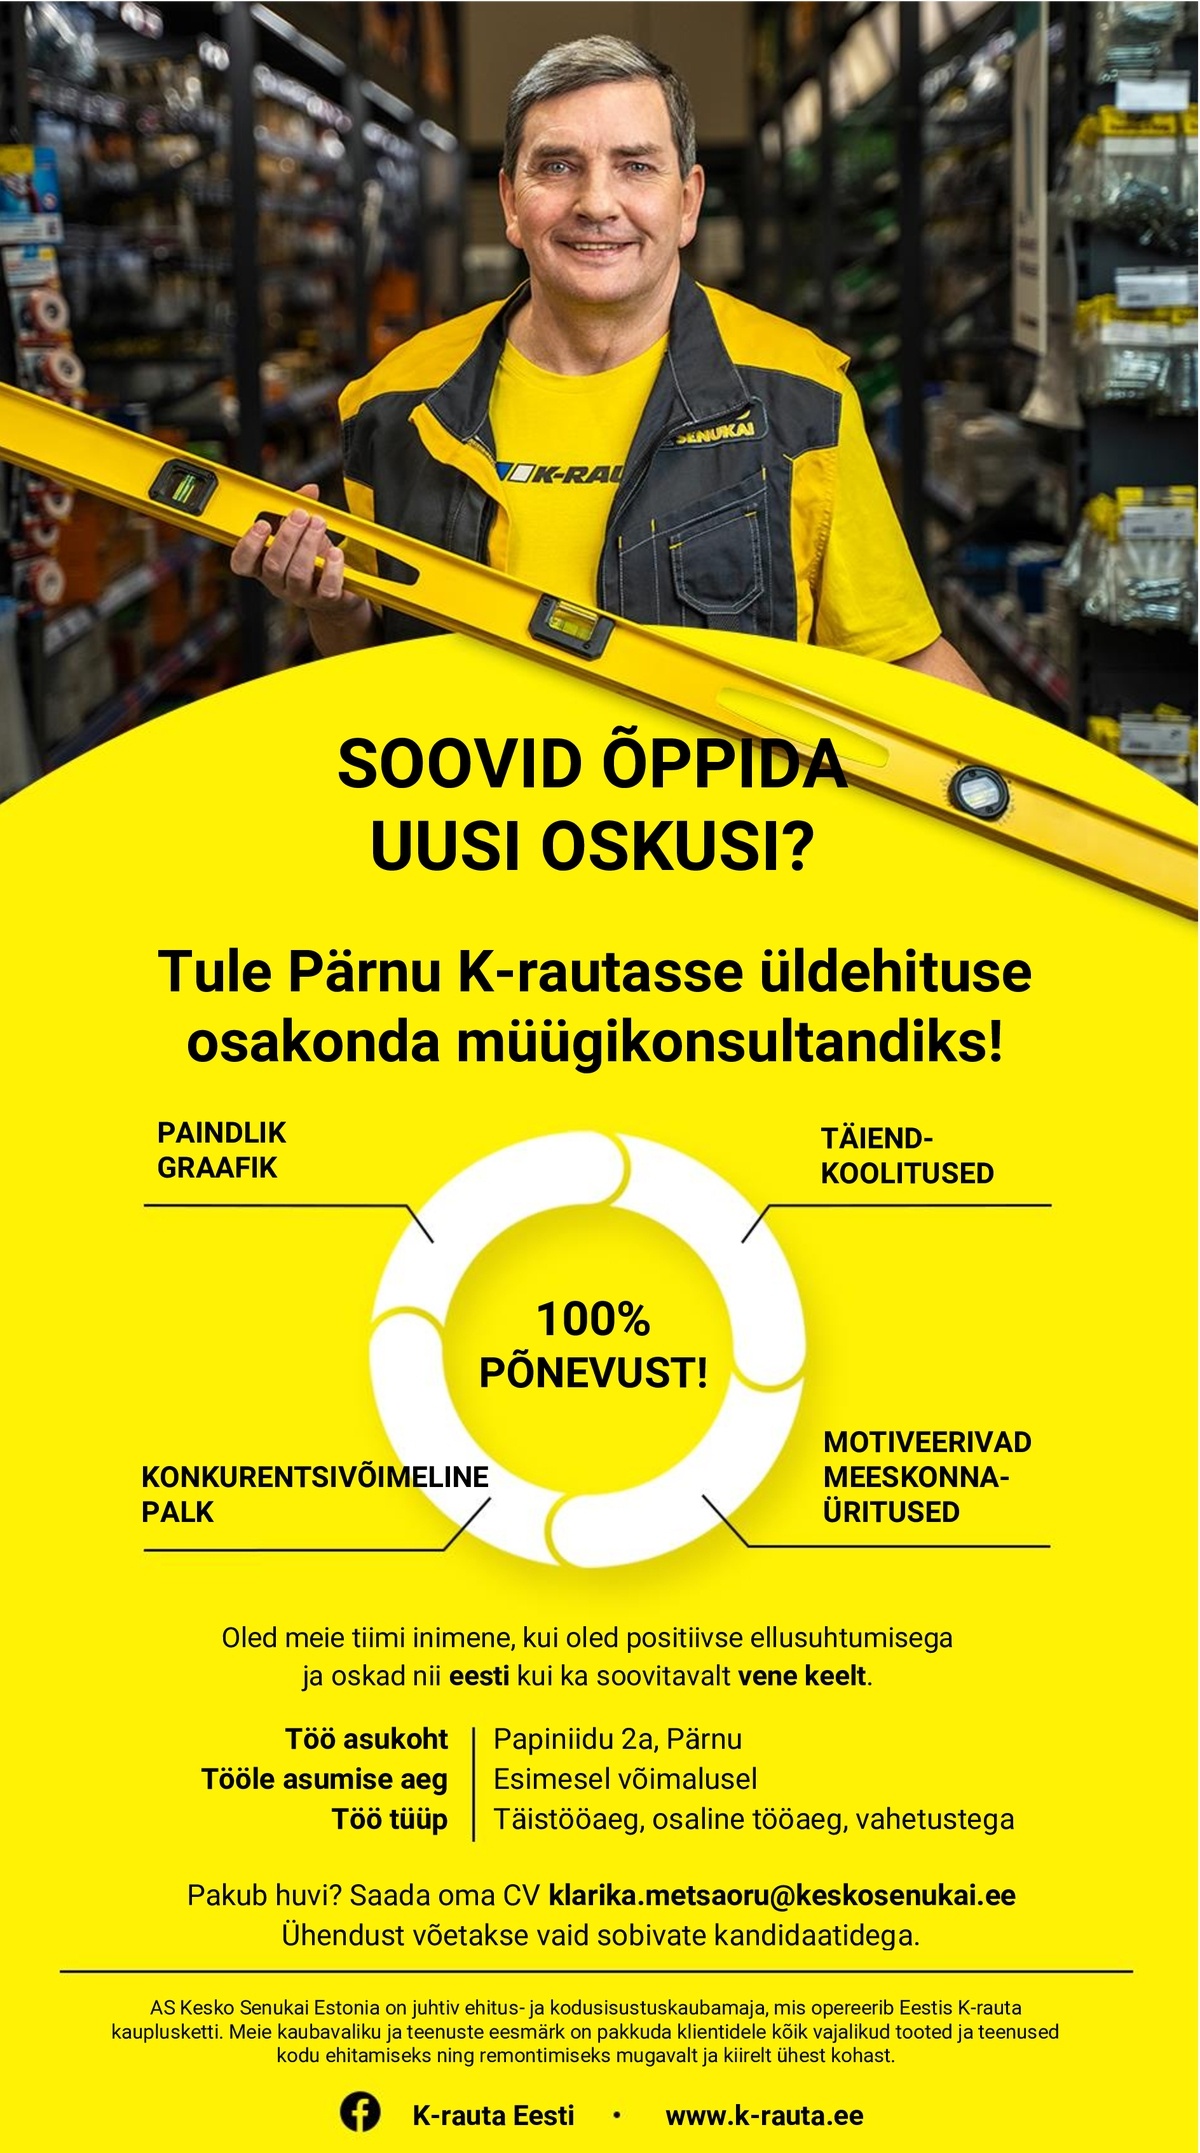 AS Kesko Senukai Estonia Müügikonsultant Pärnu K-rauta kauplusesse